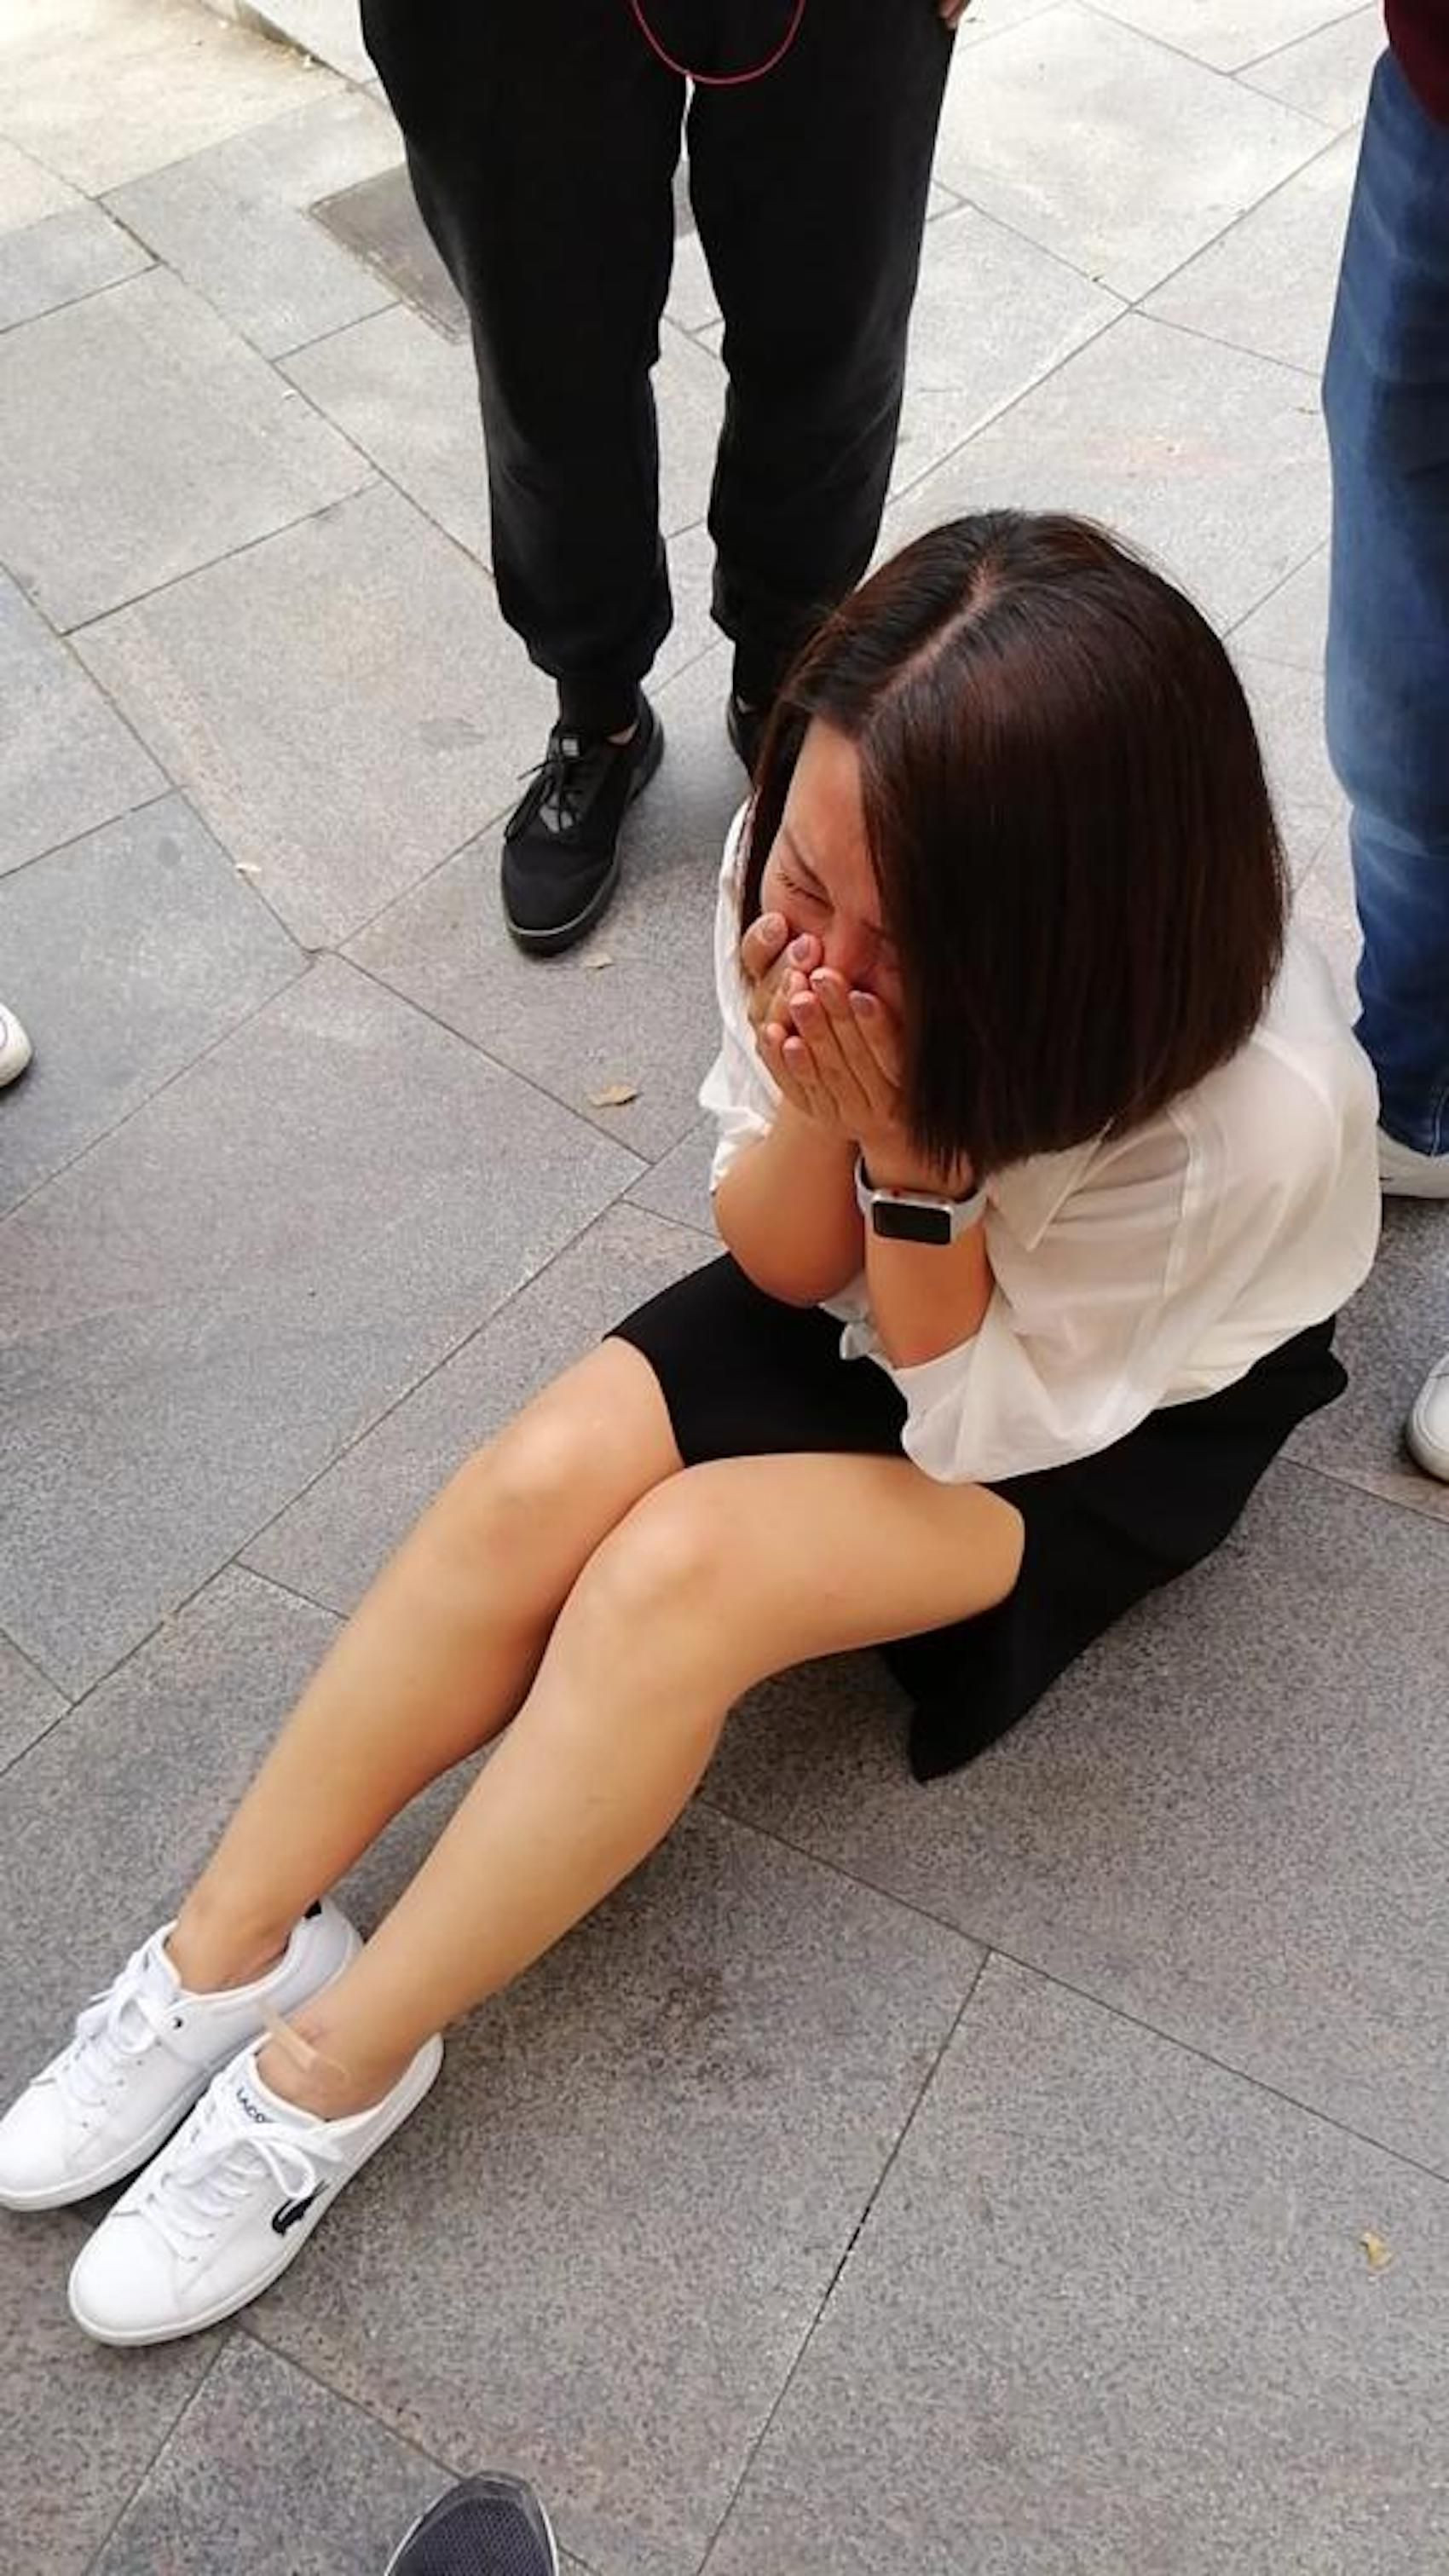 Una turista asiática tendida en el suelo tras sufrir un robo en Barcelona / MA